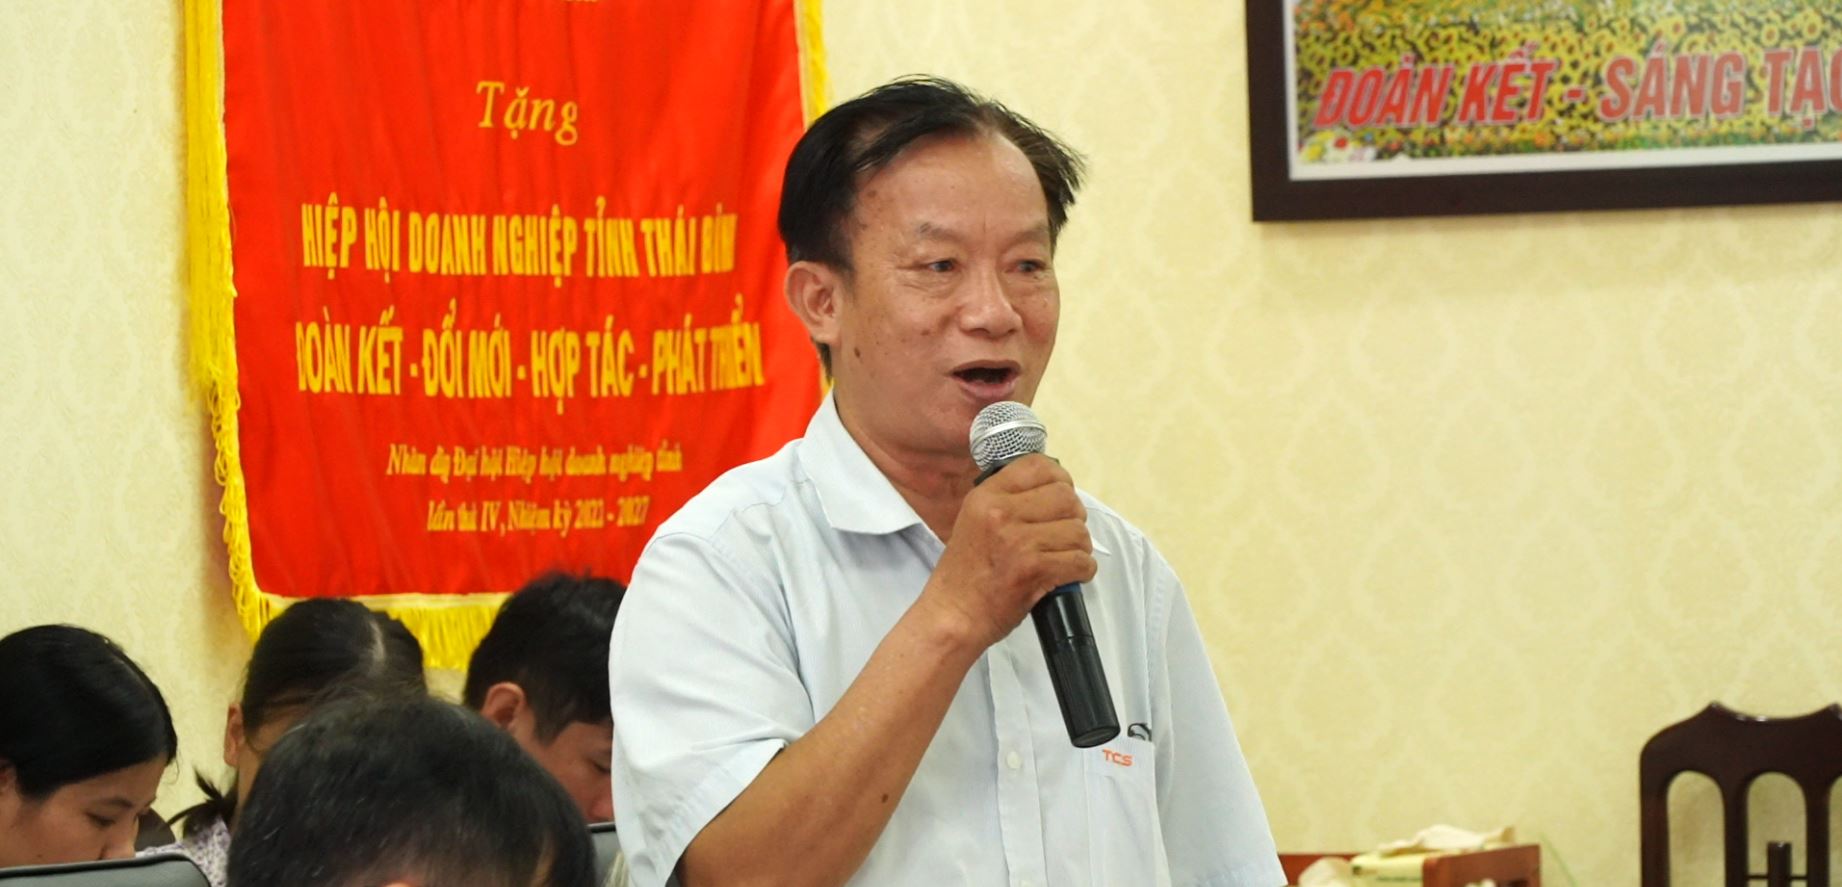 Ông Lương Hồng Tuấn Chủ tịch Hội KH huyện Tiền Hải phát biểu  đánh giá về mô hình TTHTCĐ đổi mới.